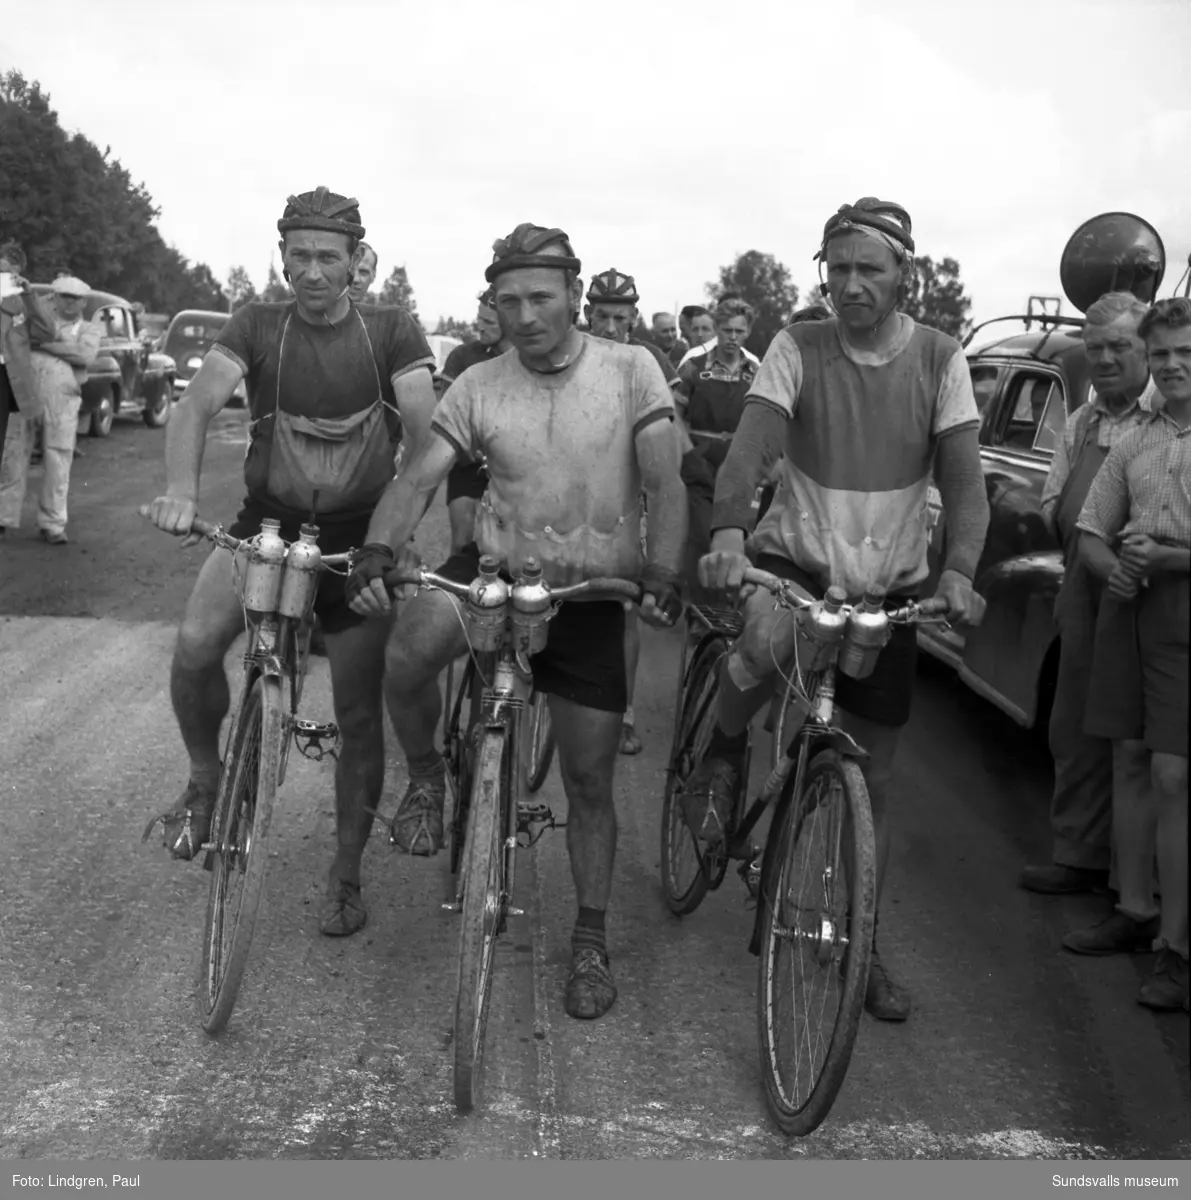 Sverigeloppet genom Sundsvall, en nationell cykeltävling mellan Ystad och Haparanda som gick ett tiotal gånger mellan åren 1951 till 1965. På bild nr 1 ses cyklisterna passera Storbron efter Baldersvägen. 
Juli 1954.